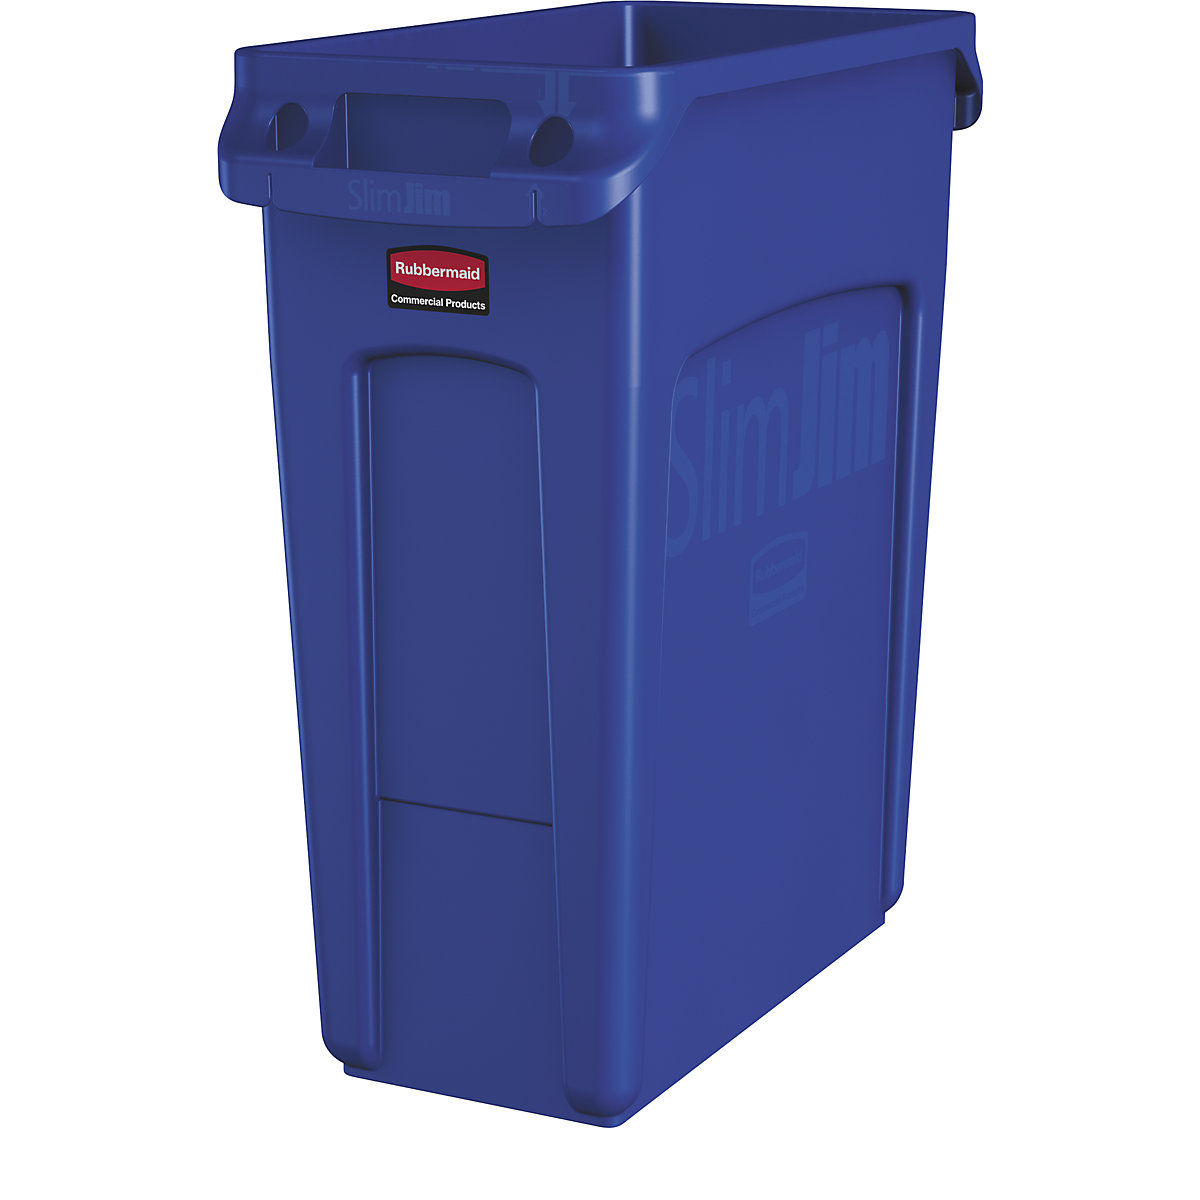 Nádoba na tříděný odpad/odpadkový koš SLIM JIM® – Rubbermaid, objem 60 l, s větracími kanálky, modrá, od 3 ks-10